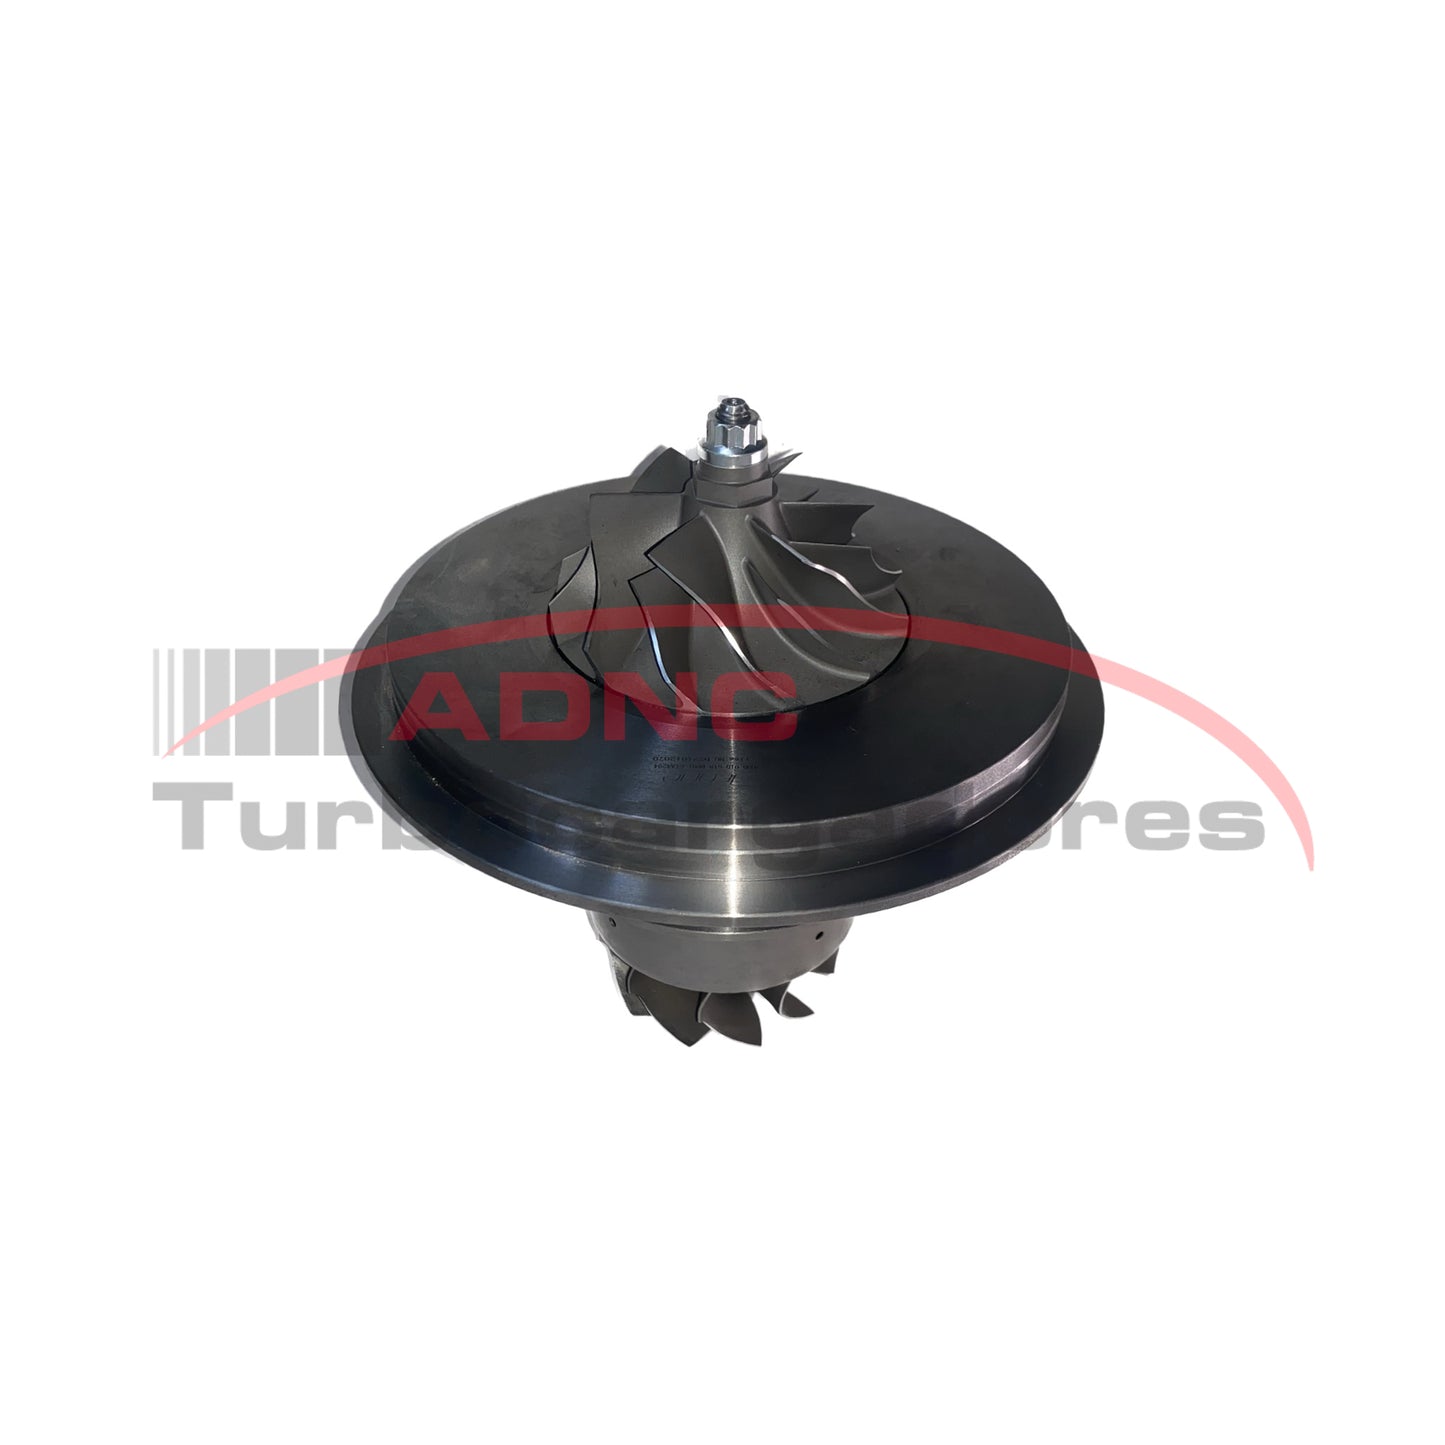 Cartridge Turbo: GTA4294 - Aplicación: Detroit S60